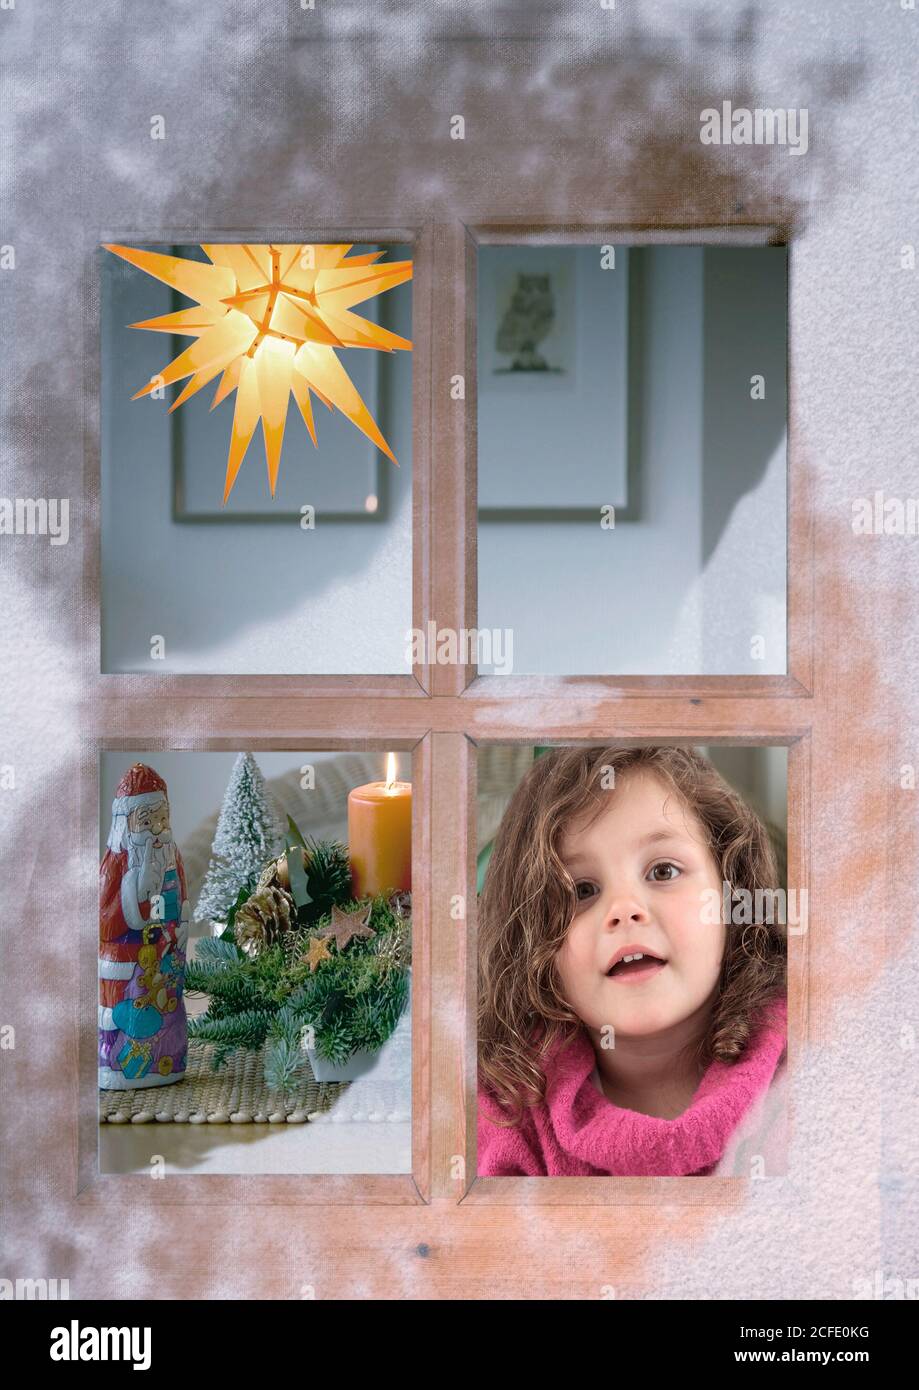 fenêtre, neige, enfant, avent, noël, décoration de noël Banque D'Images